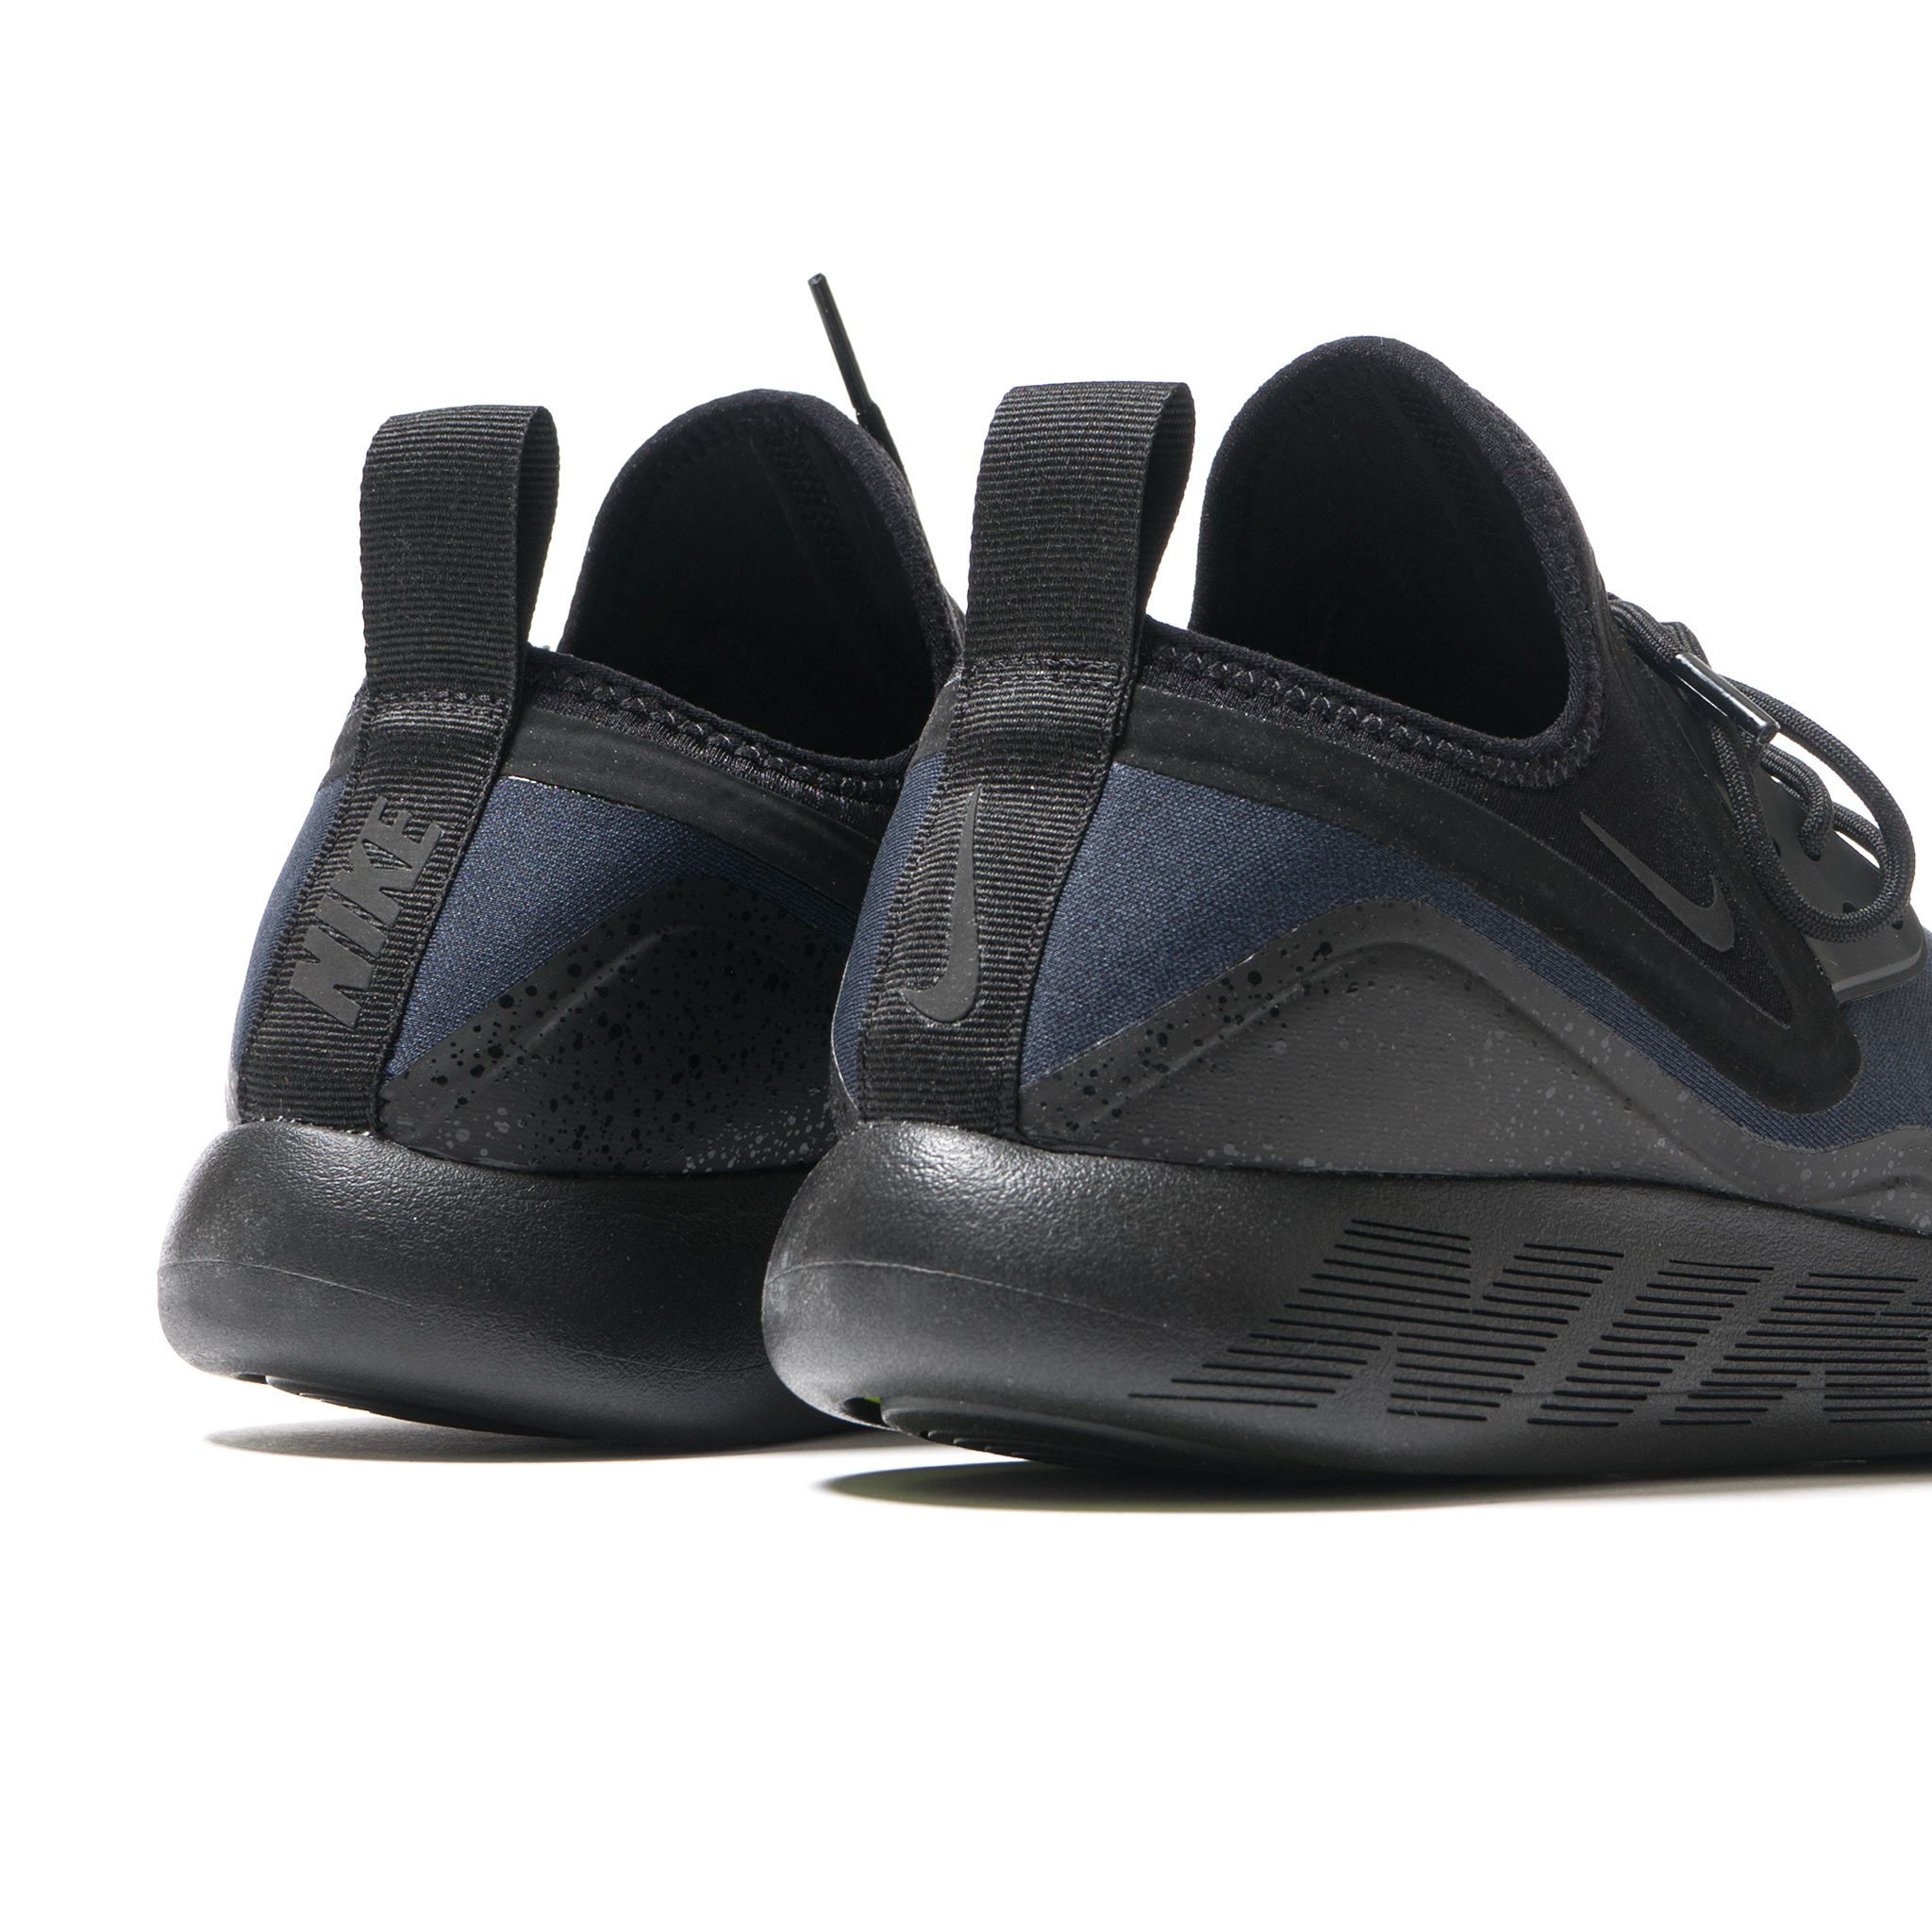 Nike LunarCharge Essential "Dark Obsidian"